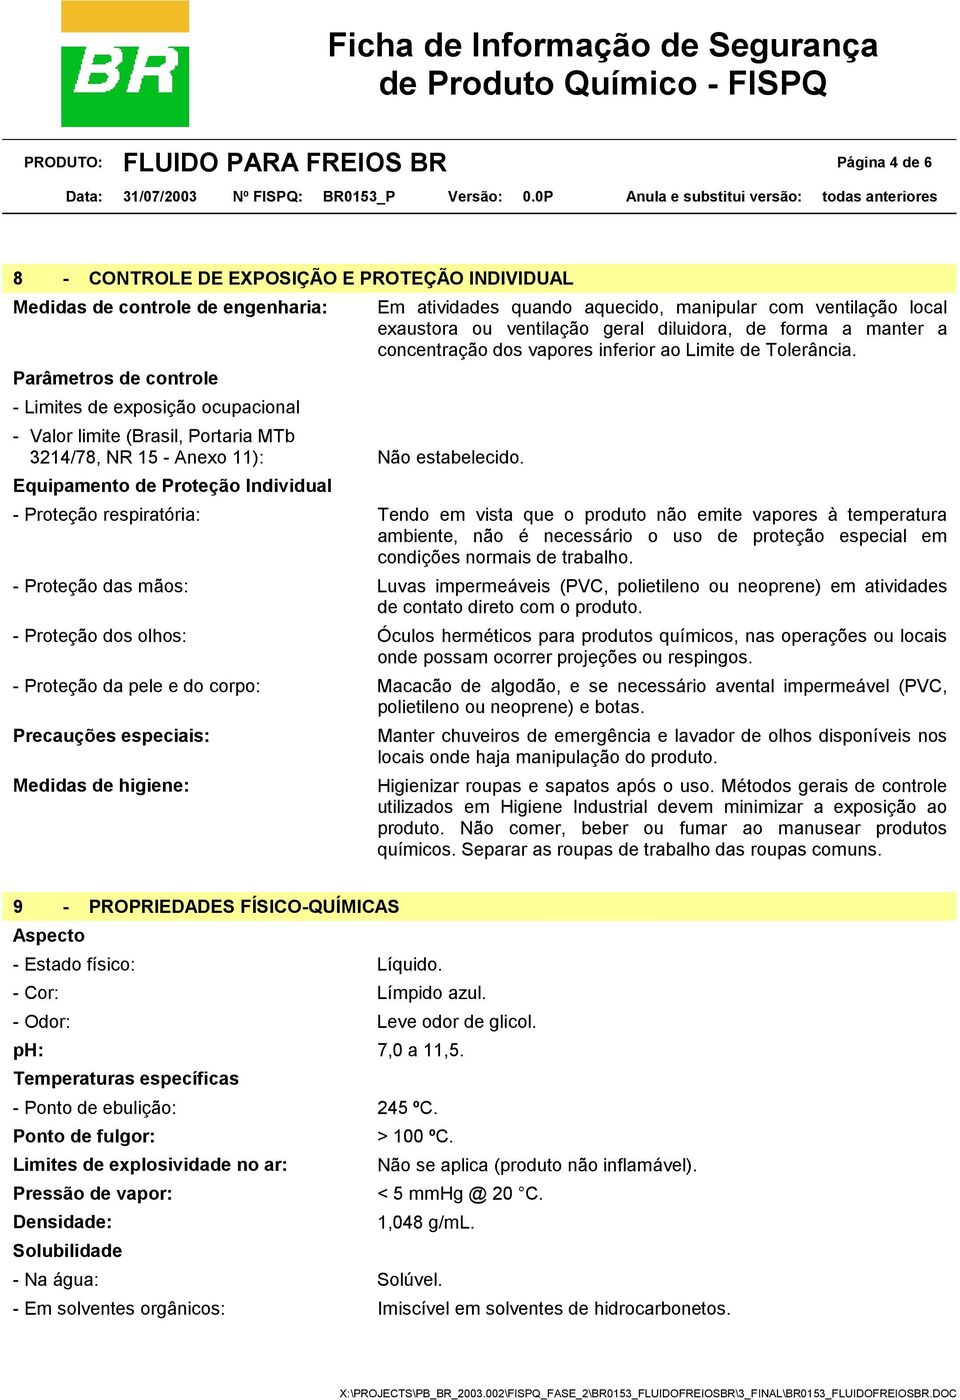 Parâmetros de controle - Limites de exposição ocupacional - Valor limite (Brasil, Portaria MTb 3214/78, NR 15 - Anexo 11): Não estabelecido.